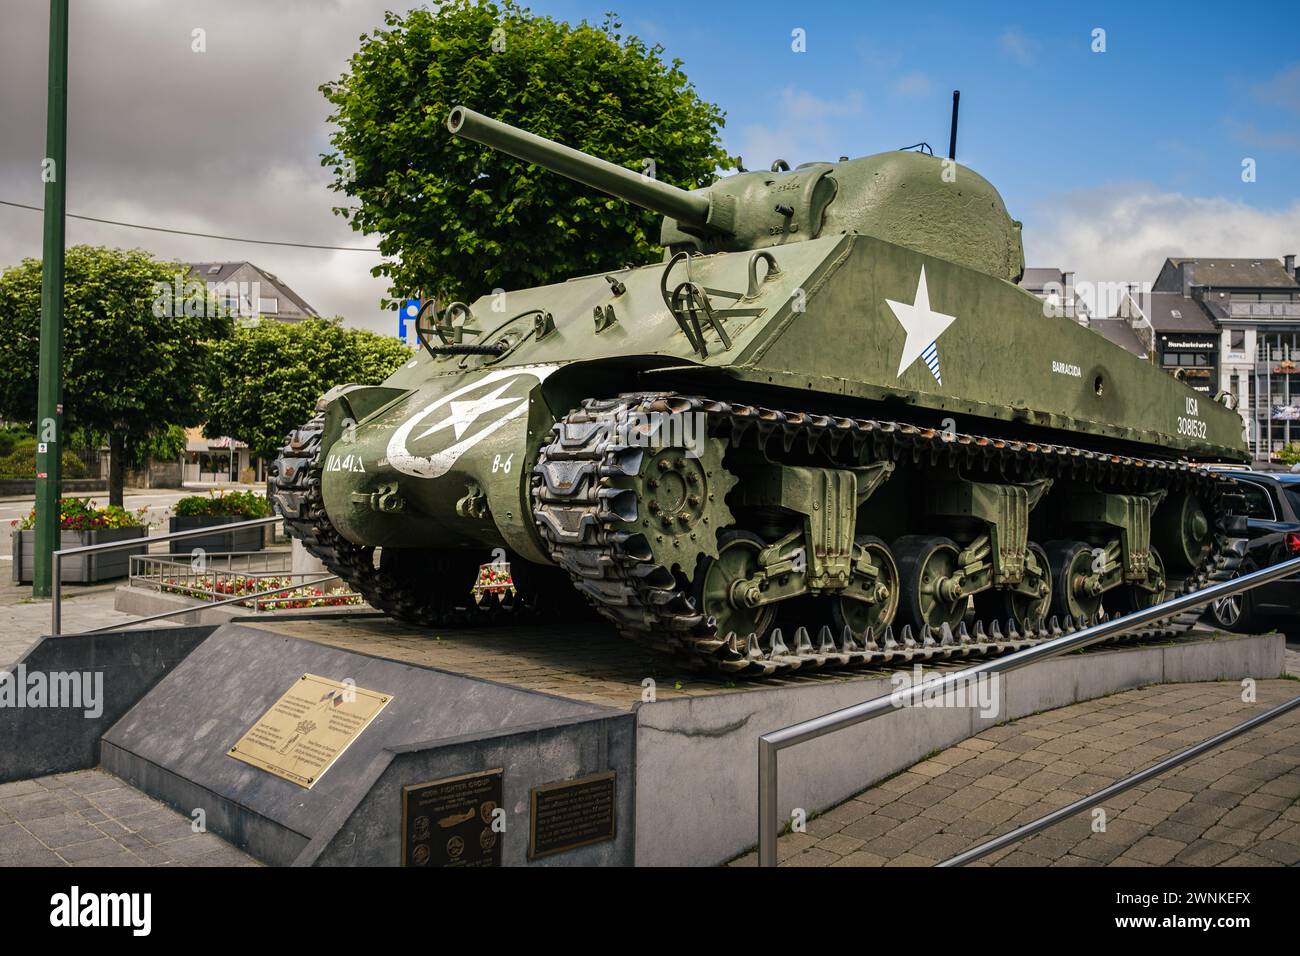 Bastogne, Belgique - 17 juillet 2021 : char américain M4 Sherman, Barracuda, sur la place McAuliffe. Monument pour se souvenir de la bataille des Ardennes dans le se Banque D'Images